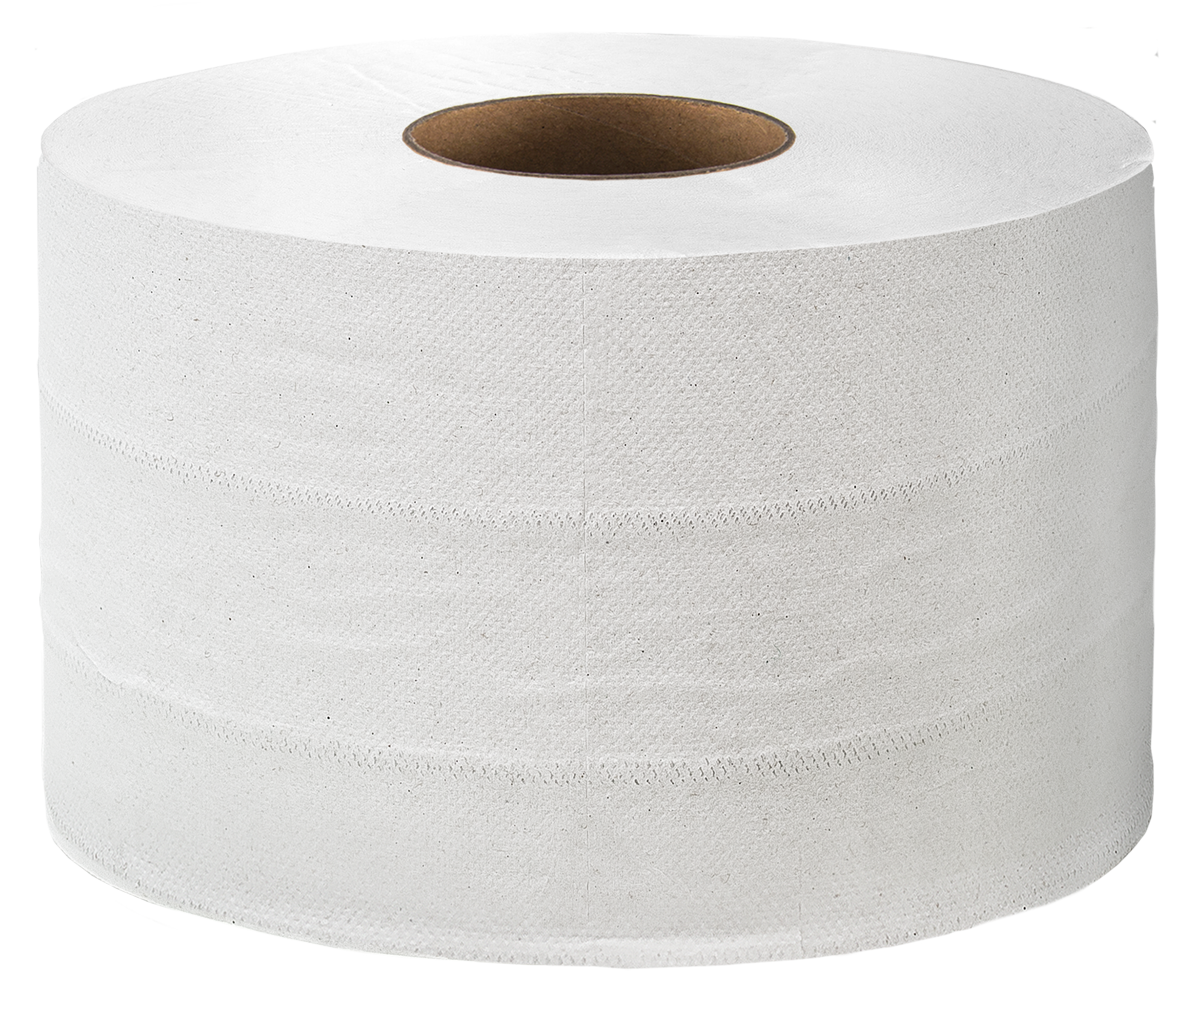 Виды туалетной бумаги Советы по выбору Анализ стоимости рулона, рейтинг лучших марок туалетной бумаги